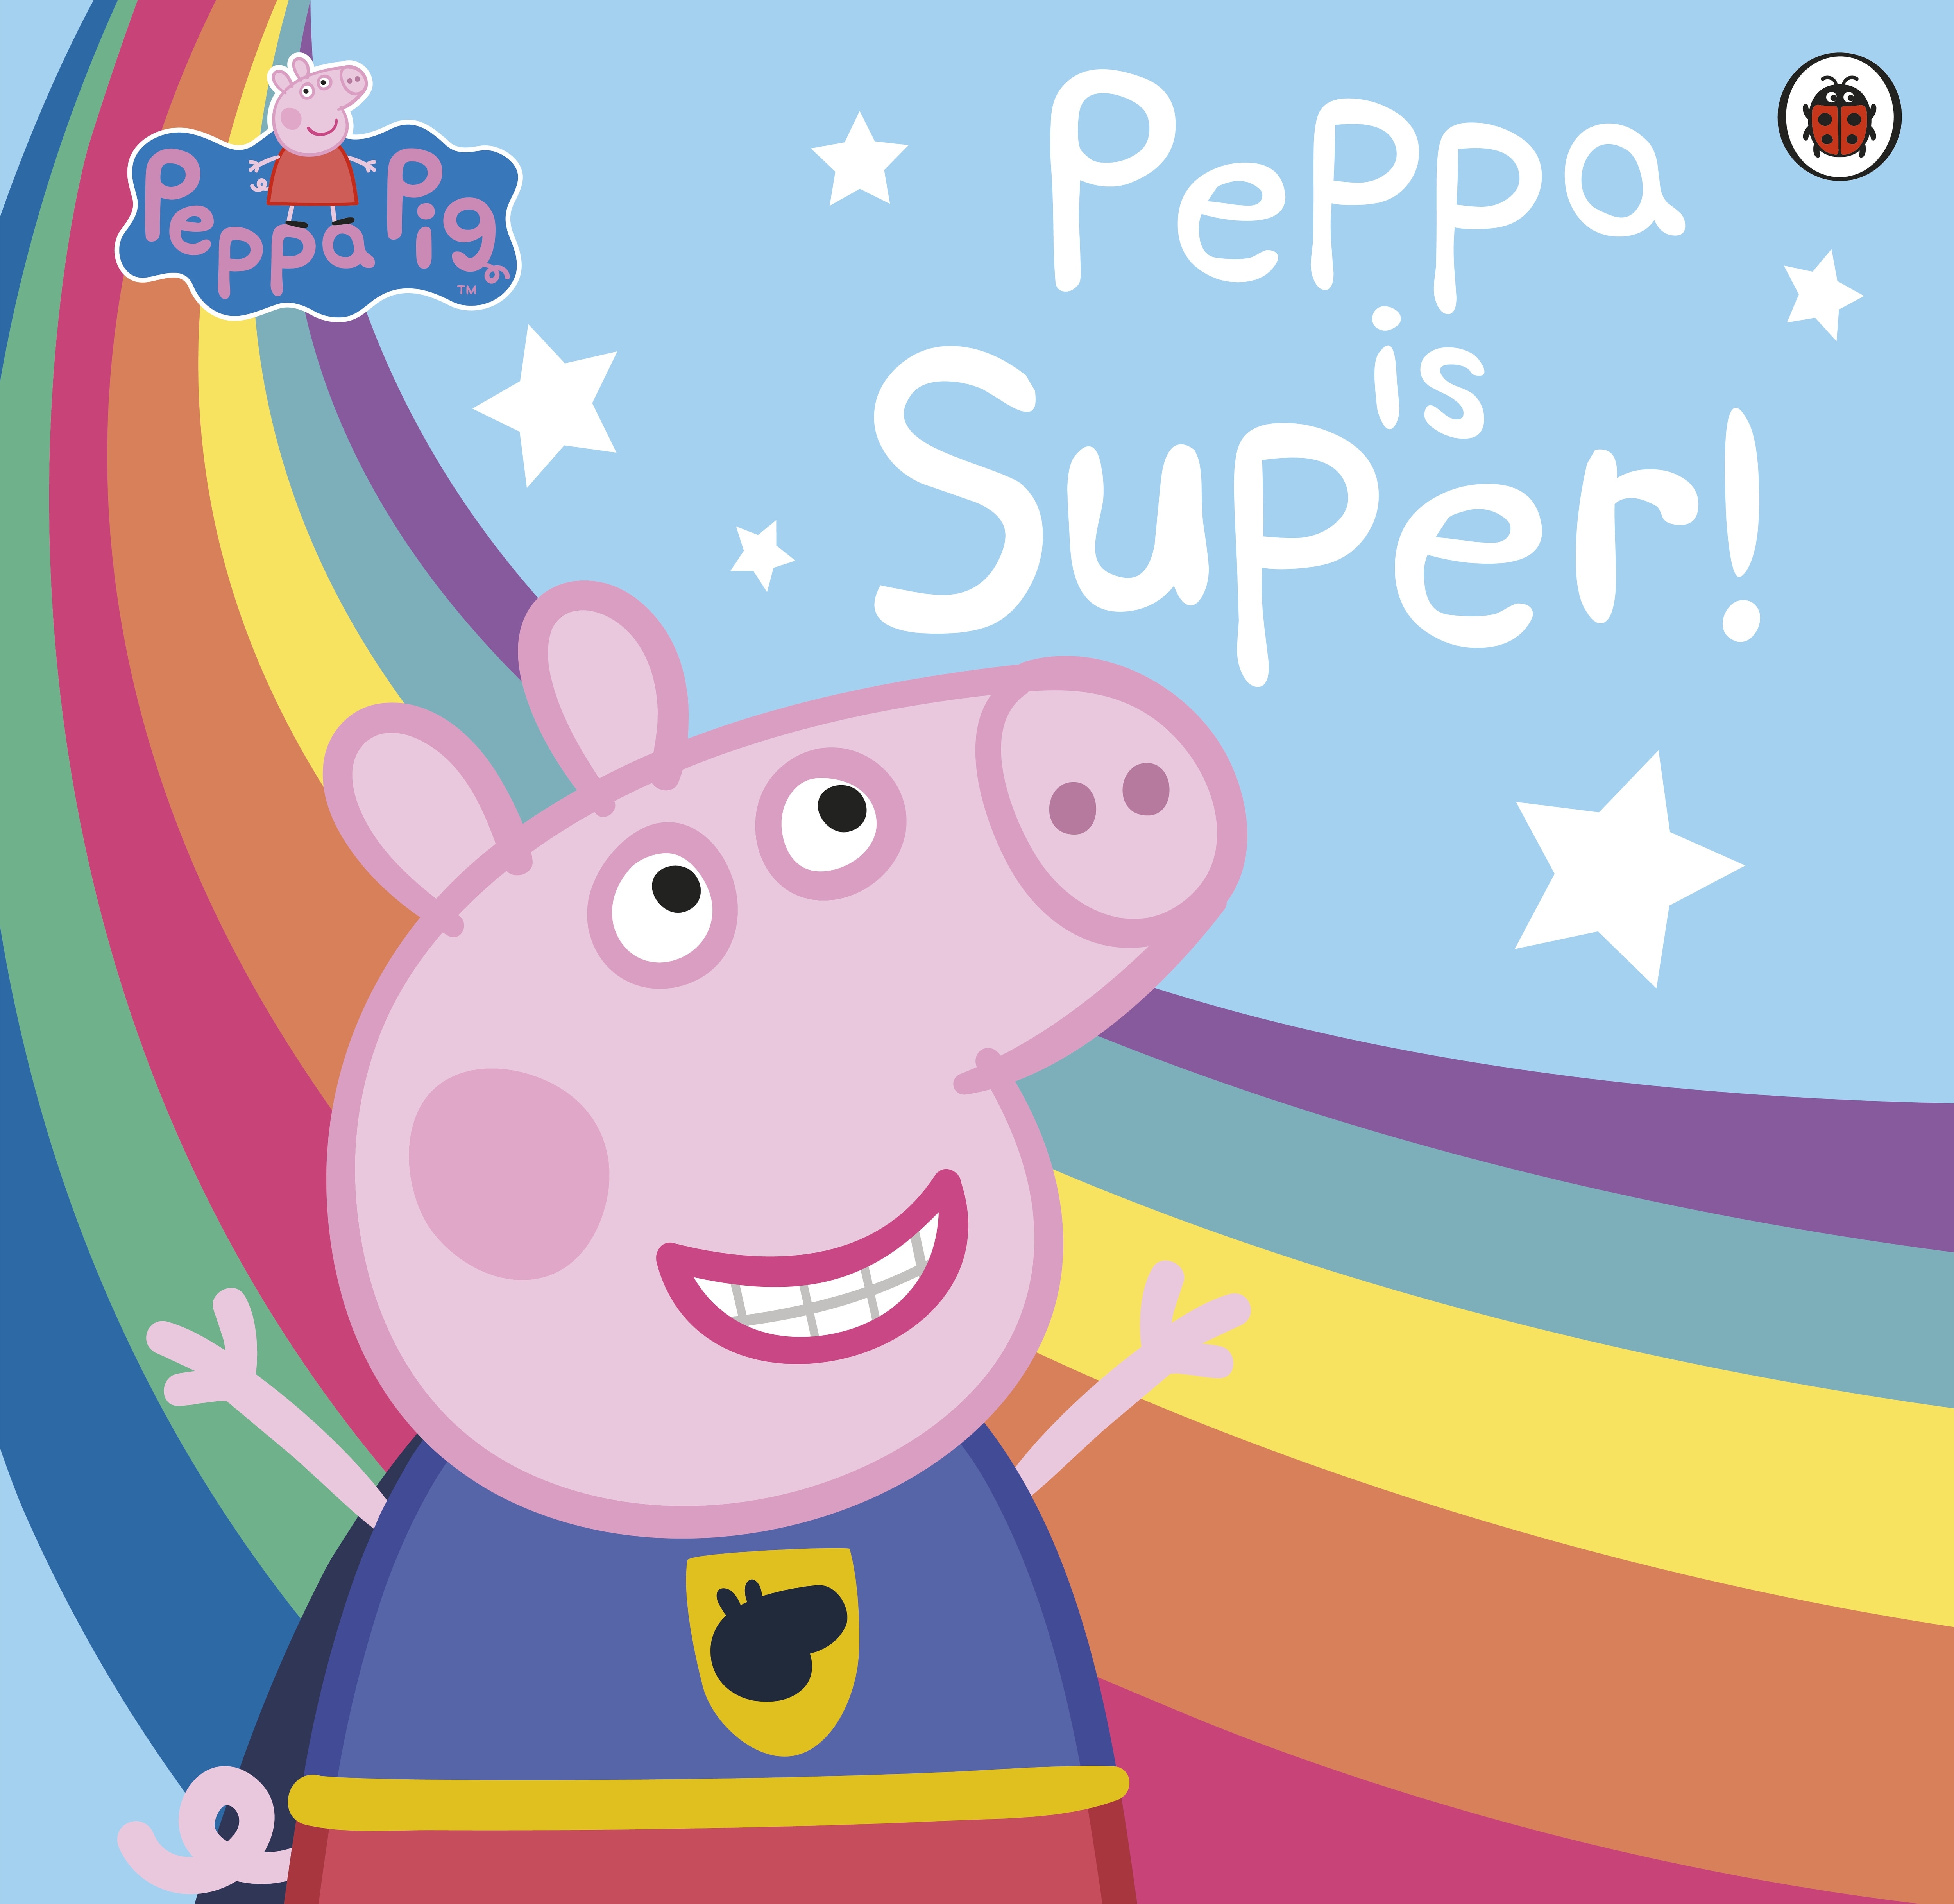 Book “Peppa Pig: Super Peppa!” by Peppa Pig — February 20, 2020